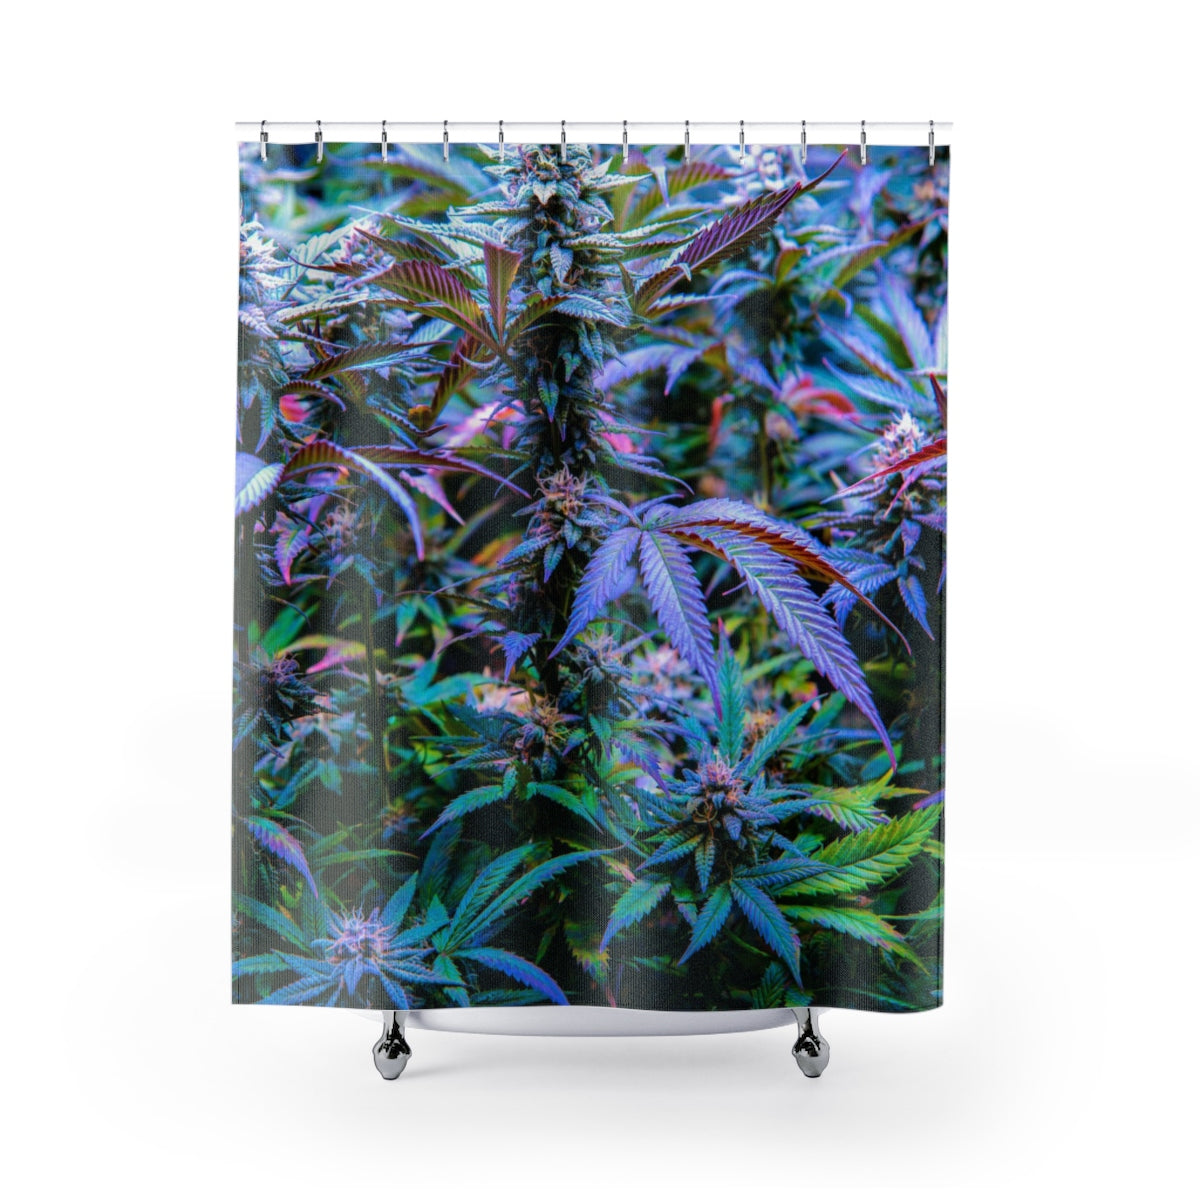 The Rainbow Cannabis Shower Curtain